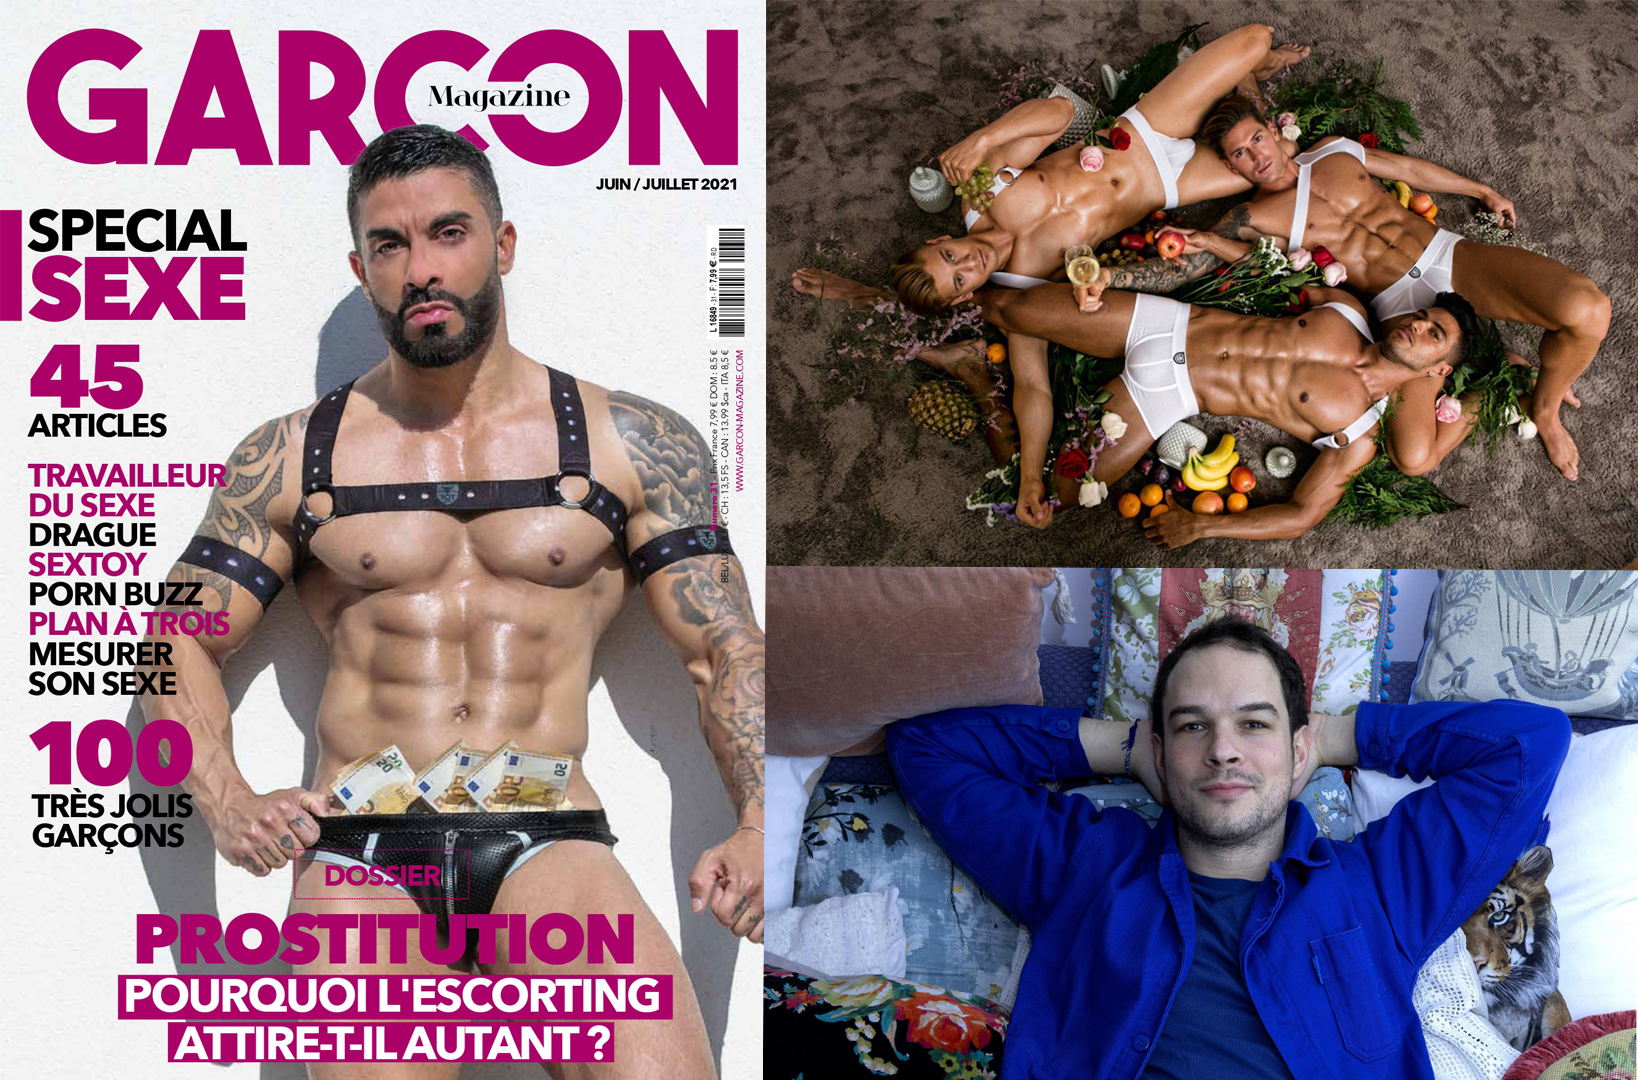 Garçon Magazine n°31 focus sur cinq sujets très sexe